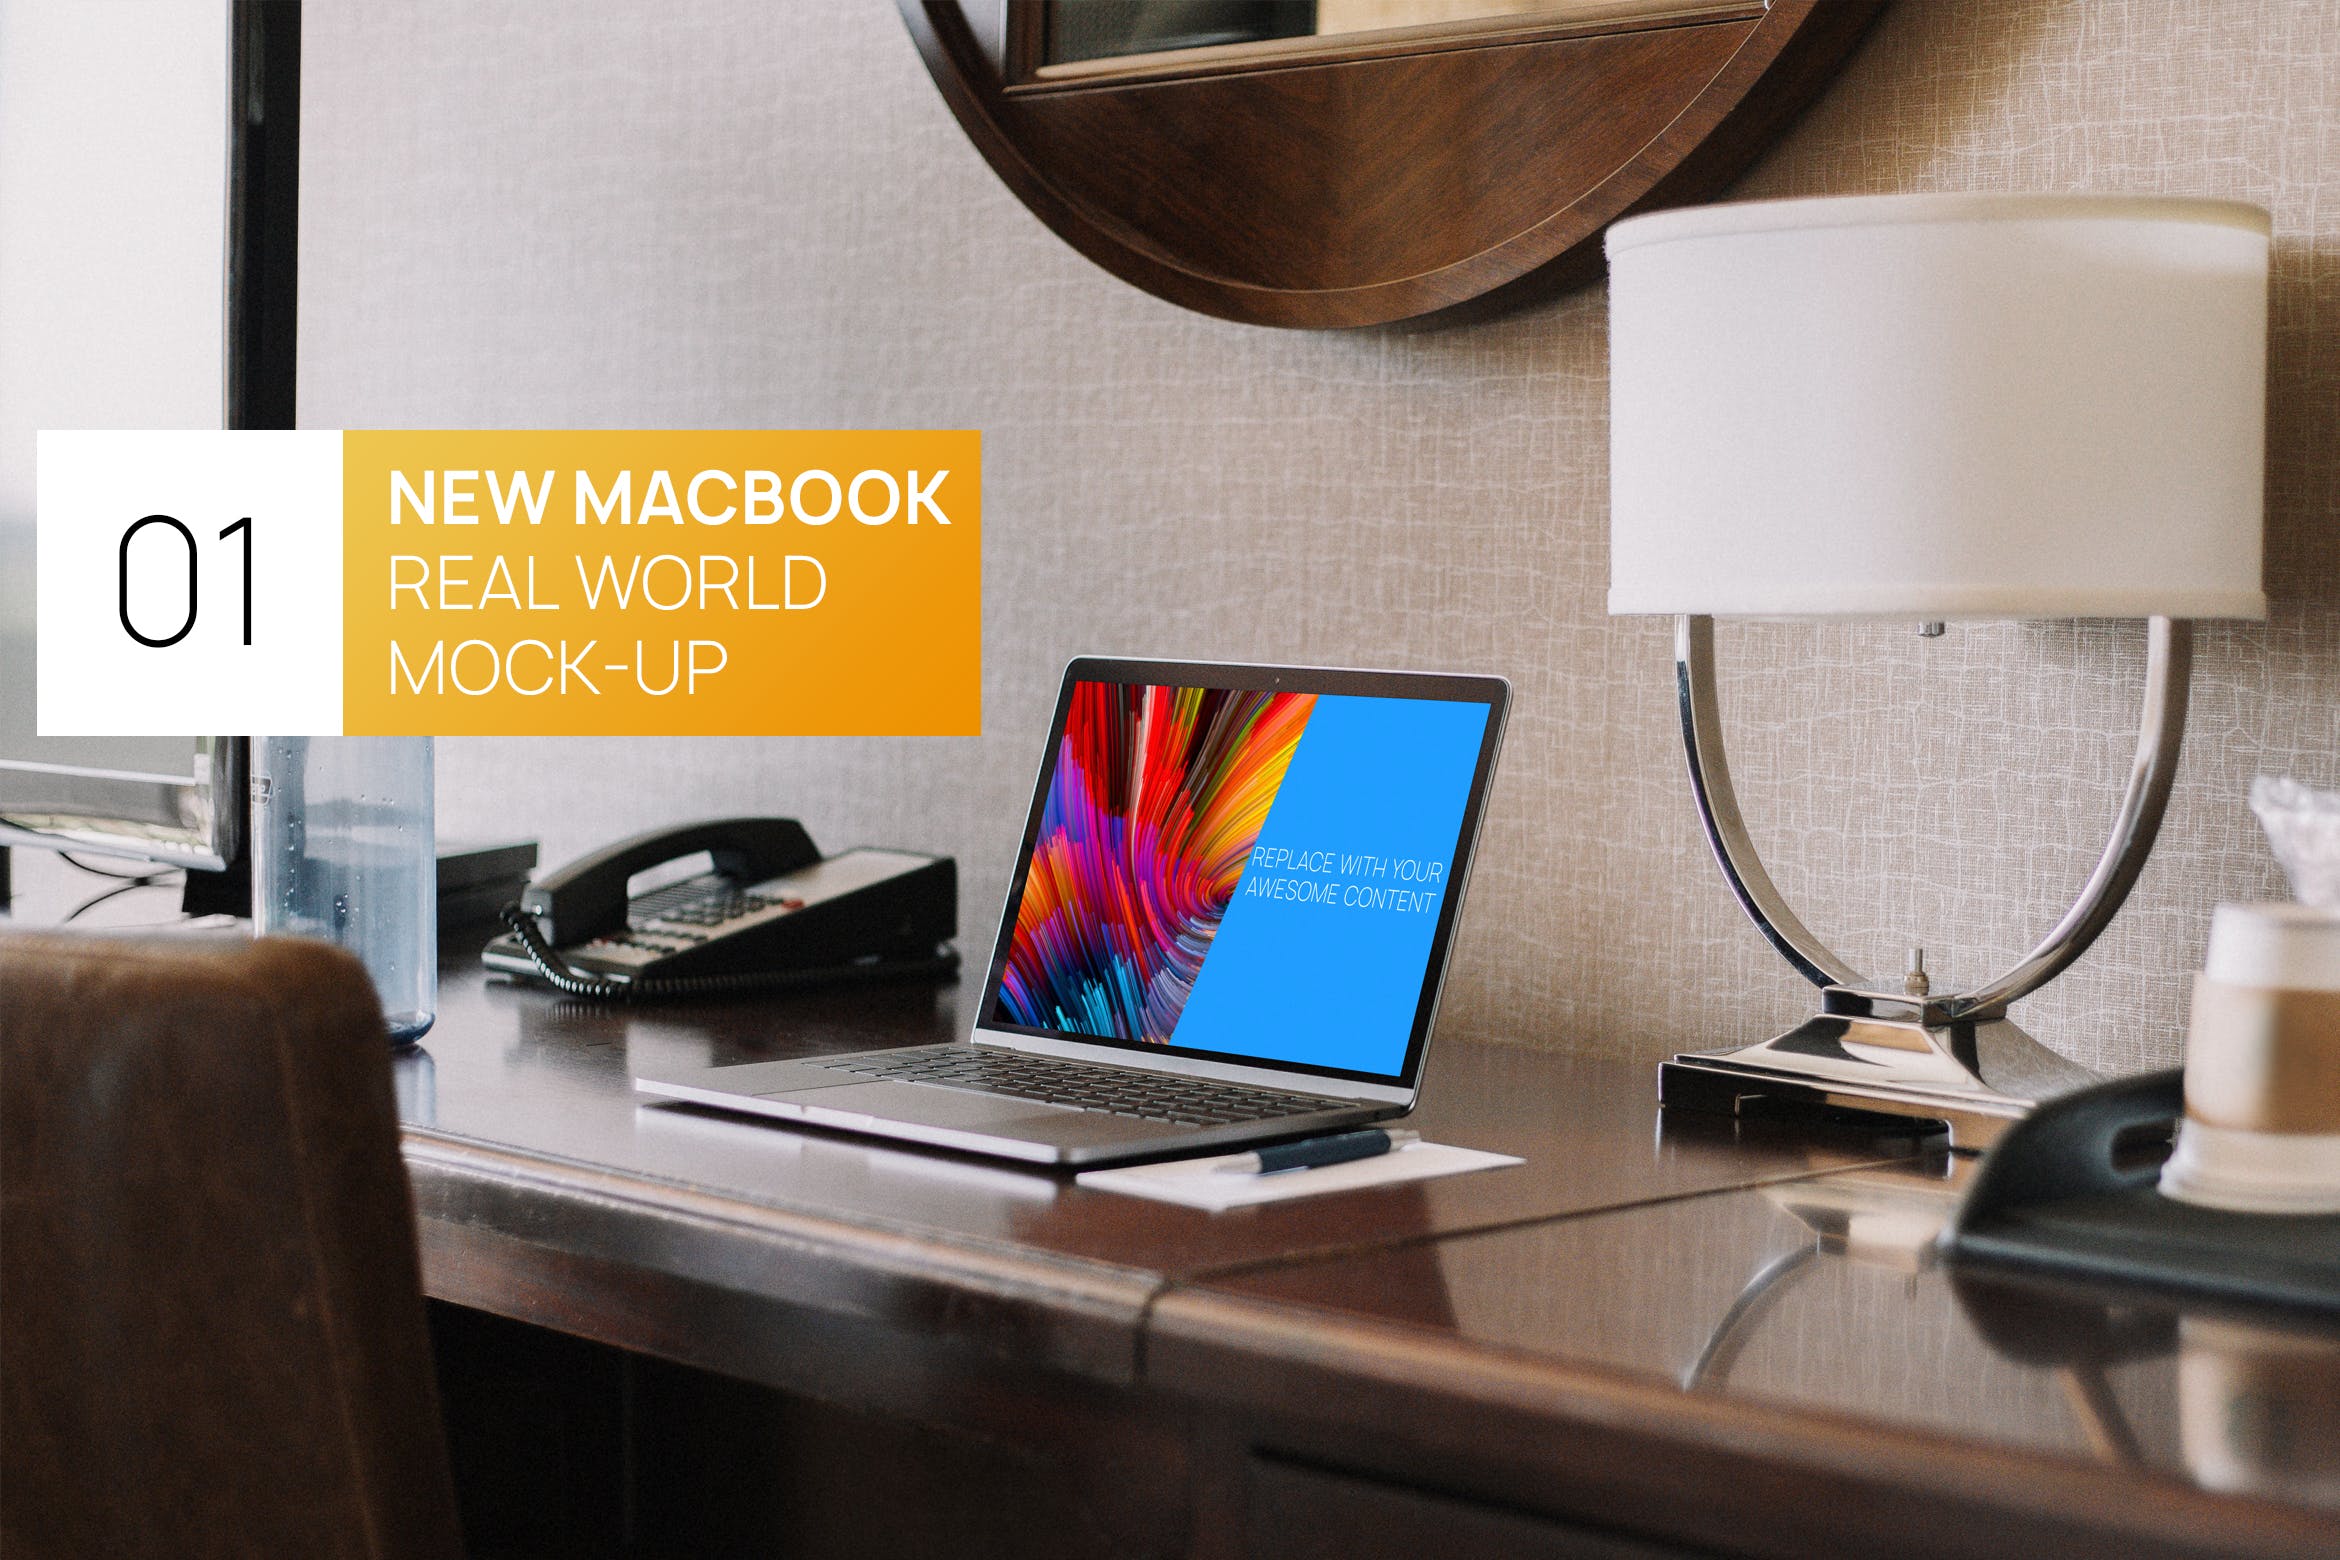 居家卧室桌面场景13寸MacBook电脑蚂蚁素材精选样机 New Macbook 13 Interior Real World Photo Mock-up插图